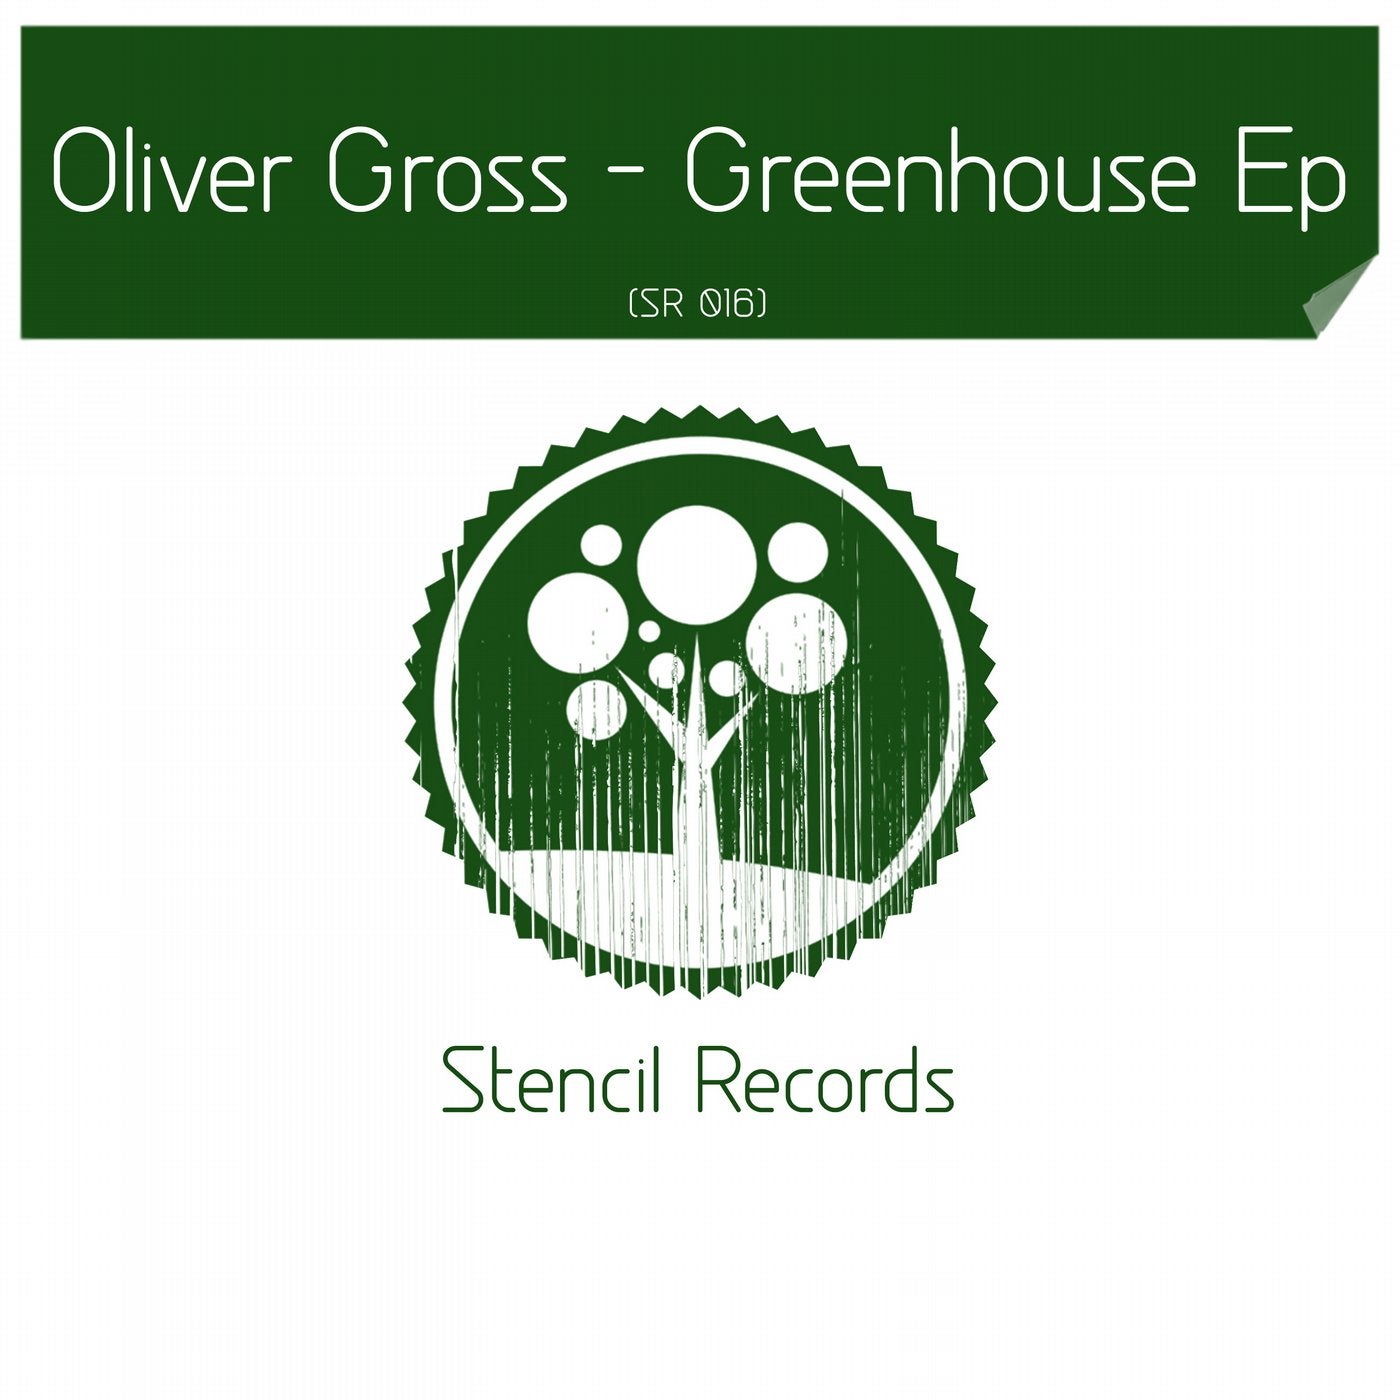 Greenhouse EP